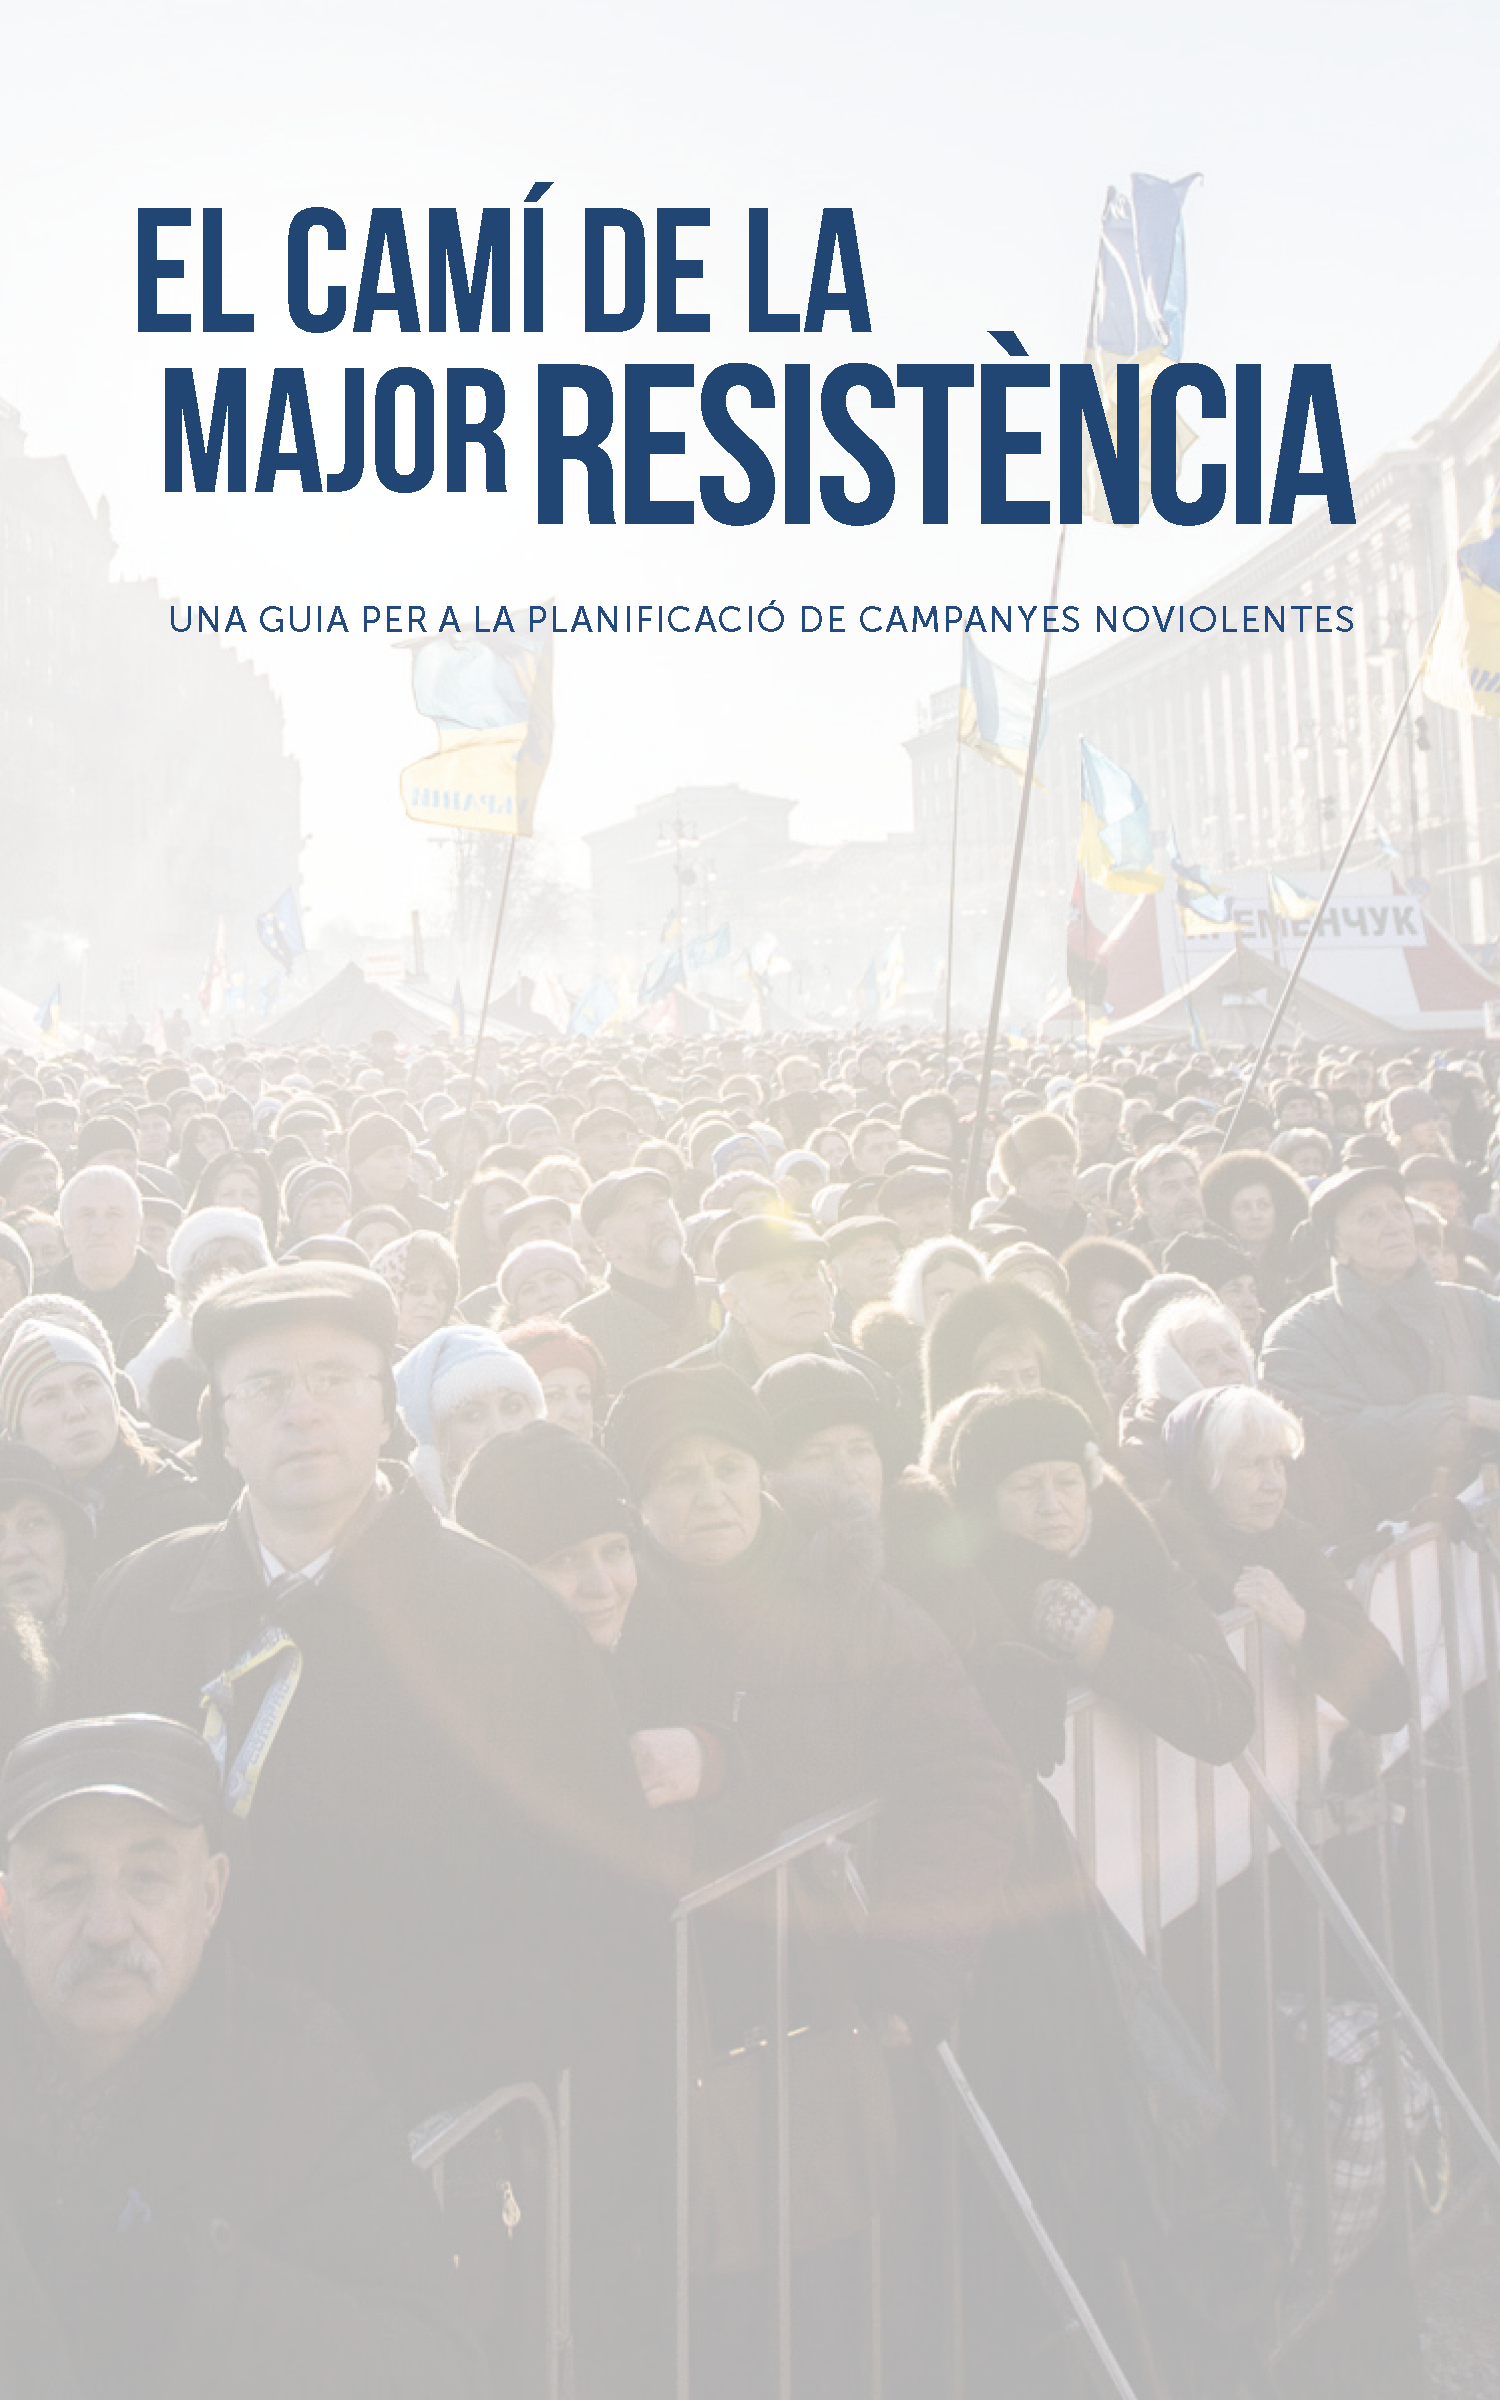 El camí de la major resistència: una guia per a la planificació de campanyes noviolentes